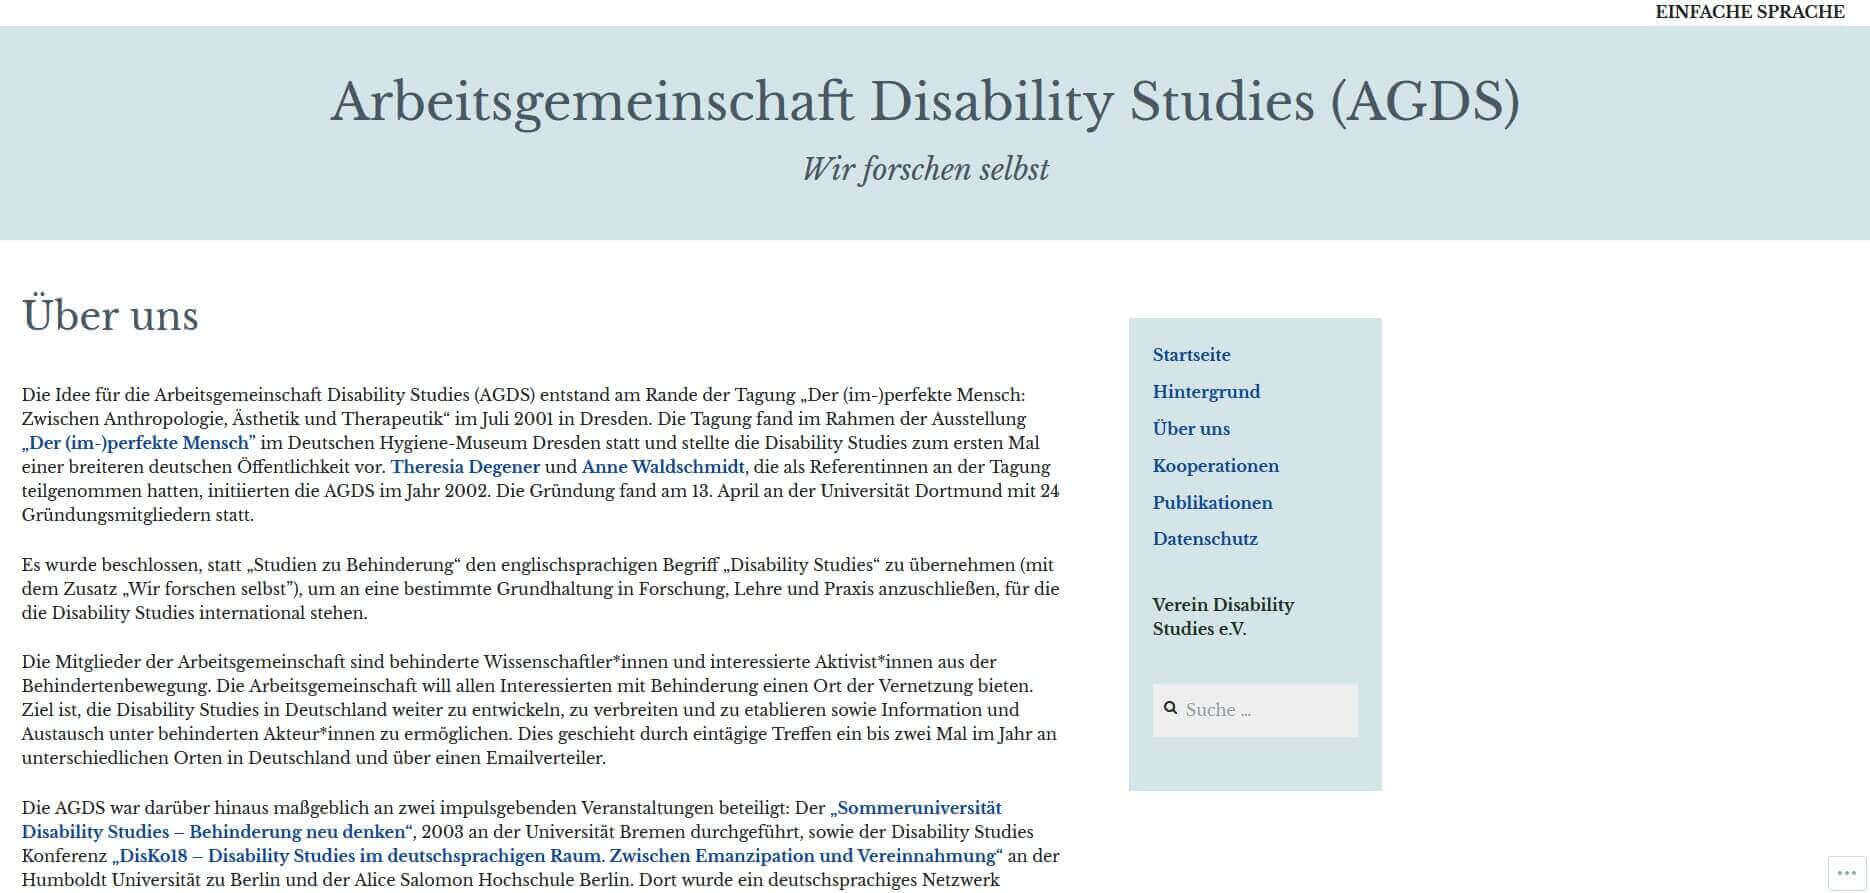 Screenshot der Homepage der deutschen AGDS - Arbeitsgemeinschaft Disability Studies